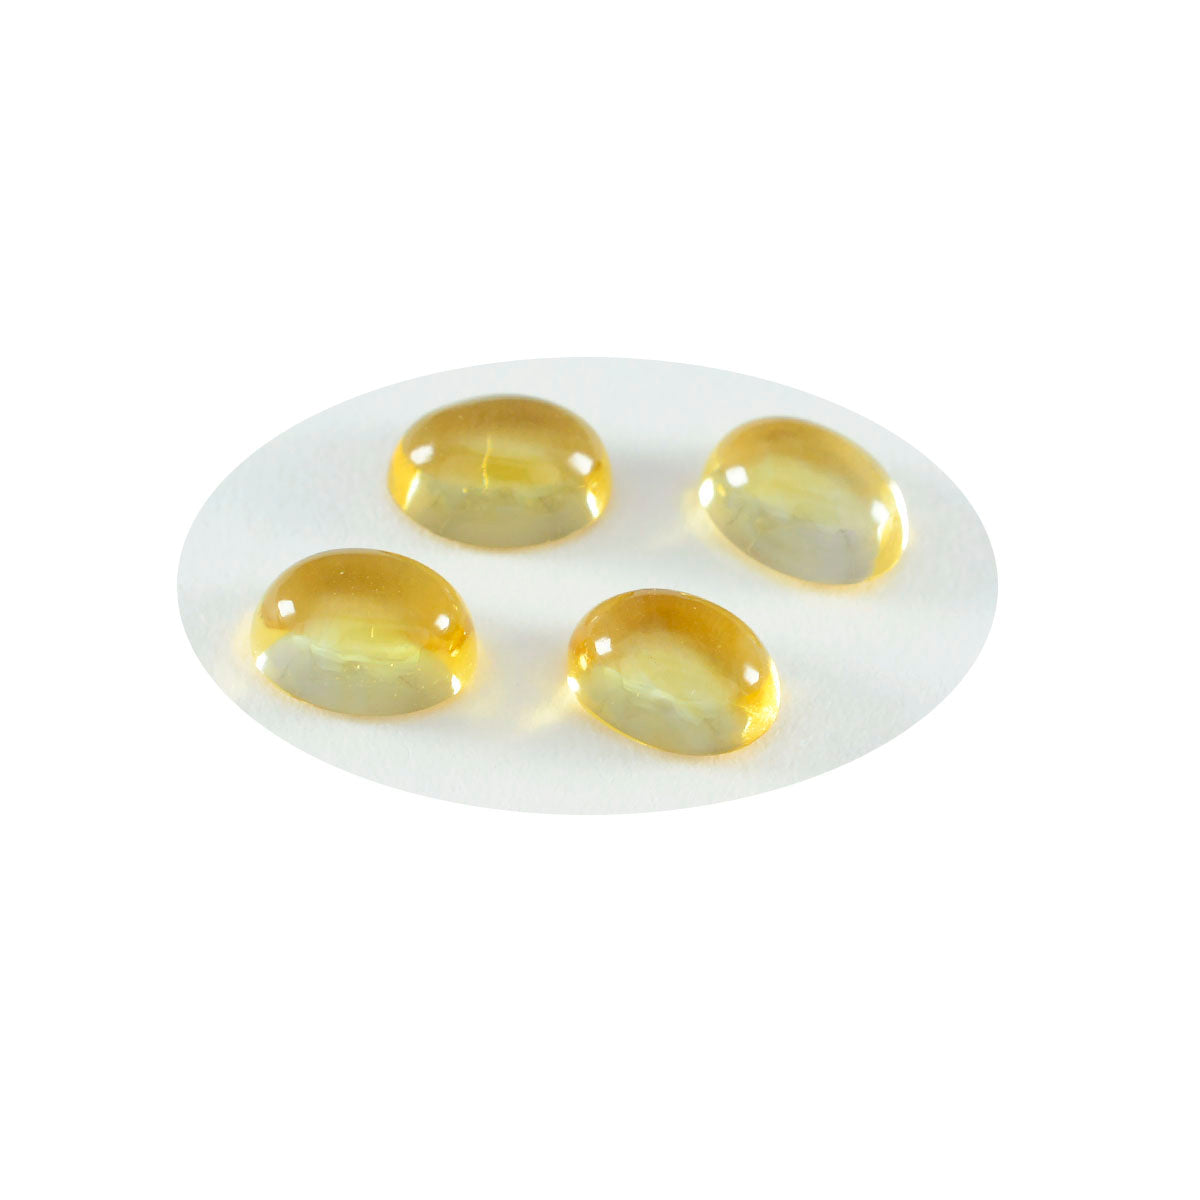 riyogems 1 pz cabochon di citrino giallo 5x7 mm di forma ovale, pietra preziosa sfusa di ottima qualità